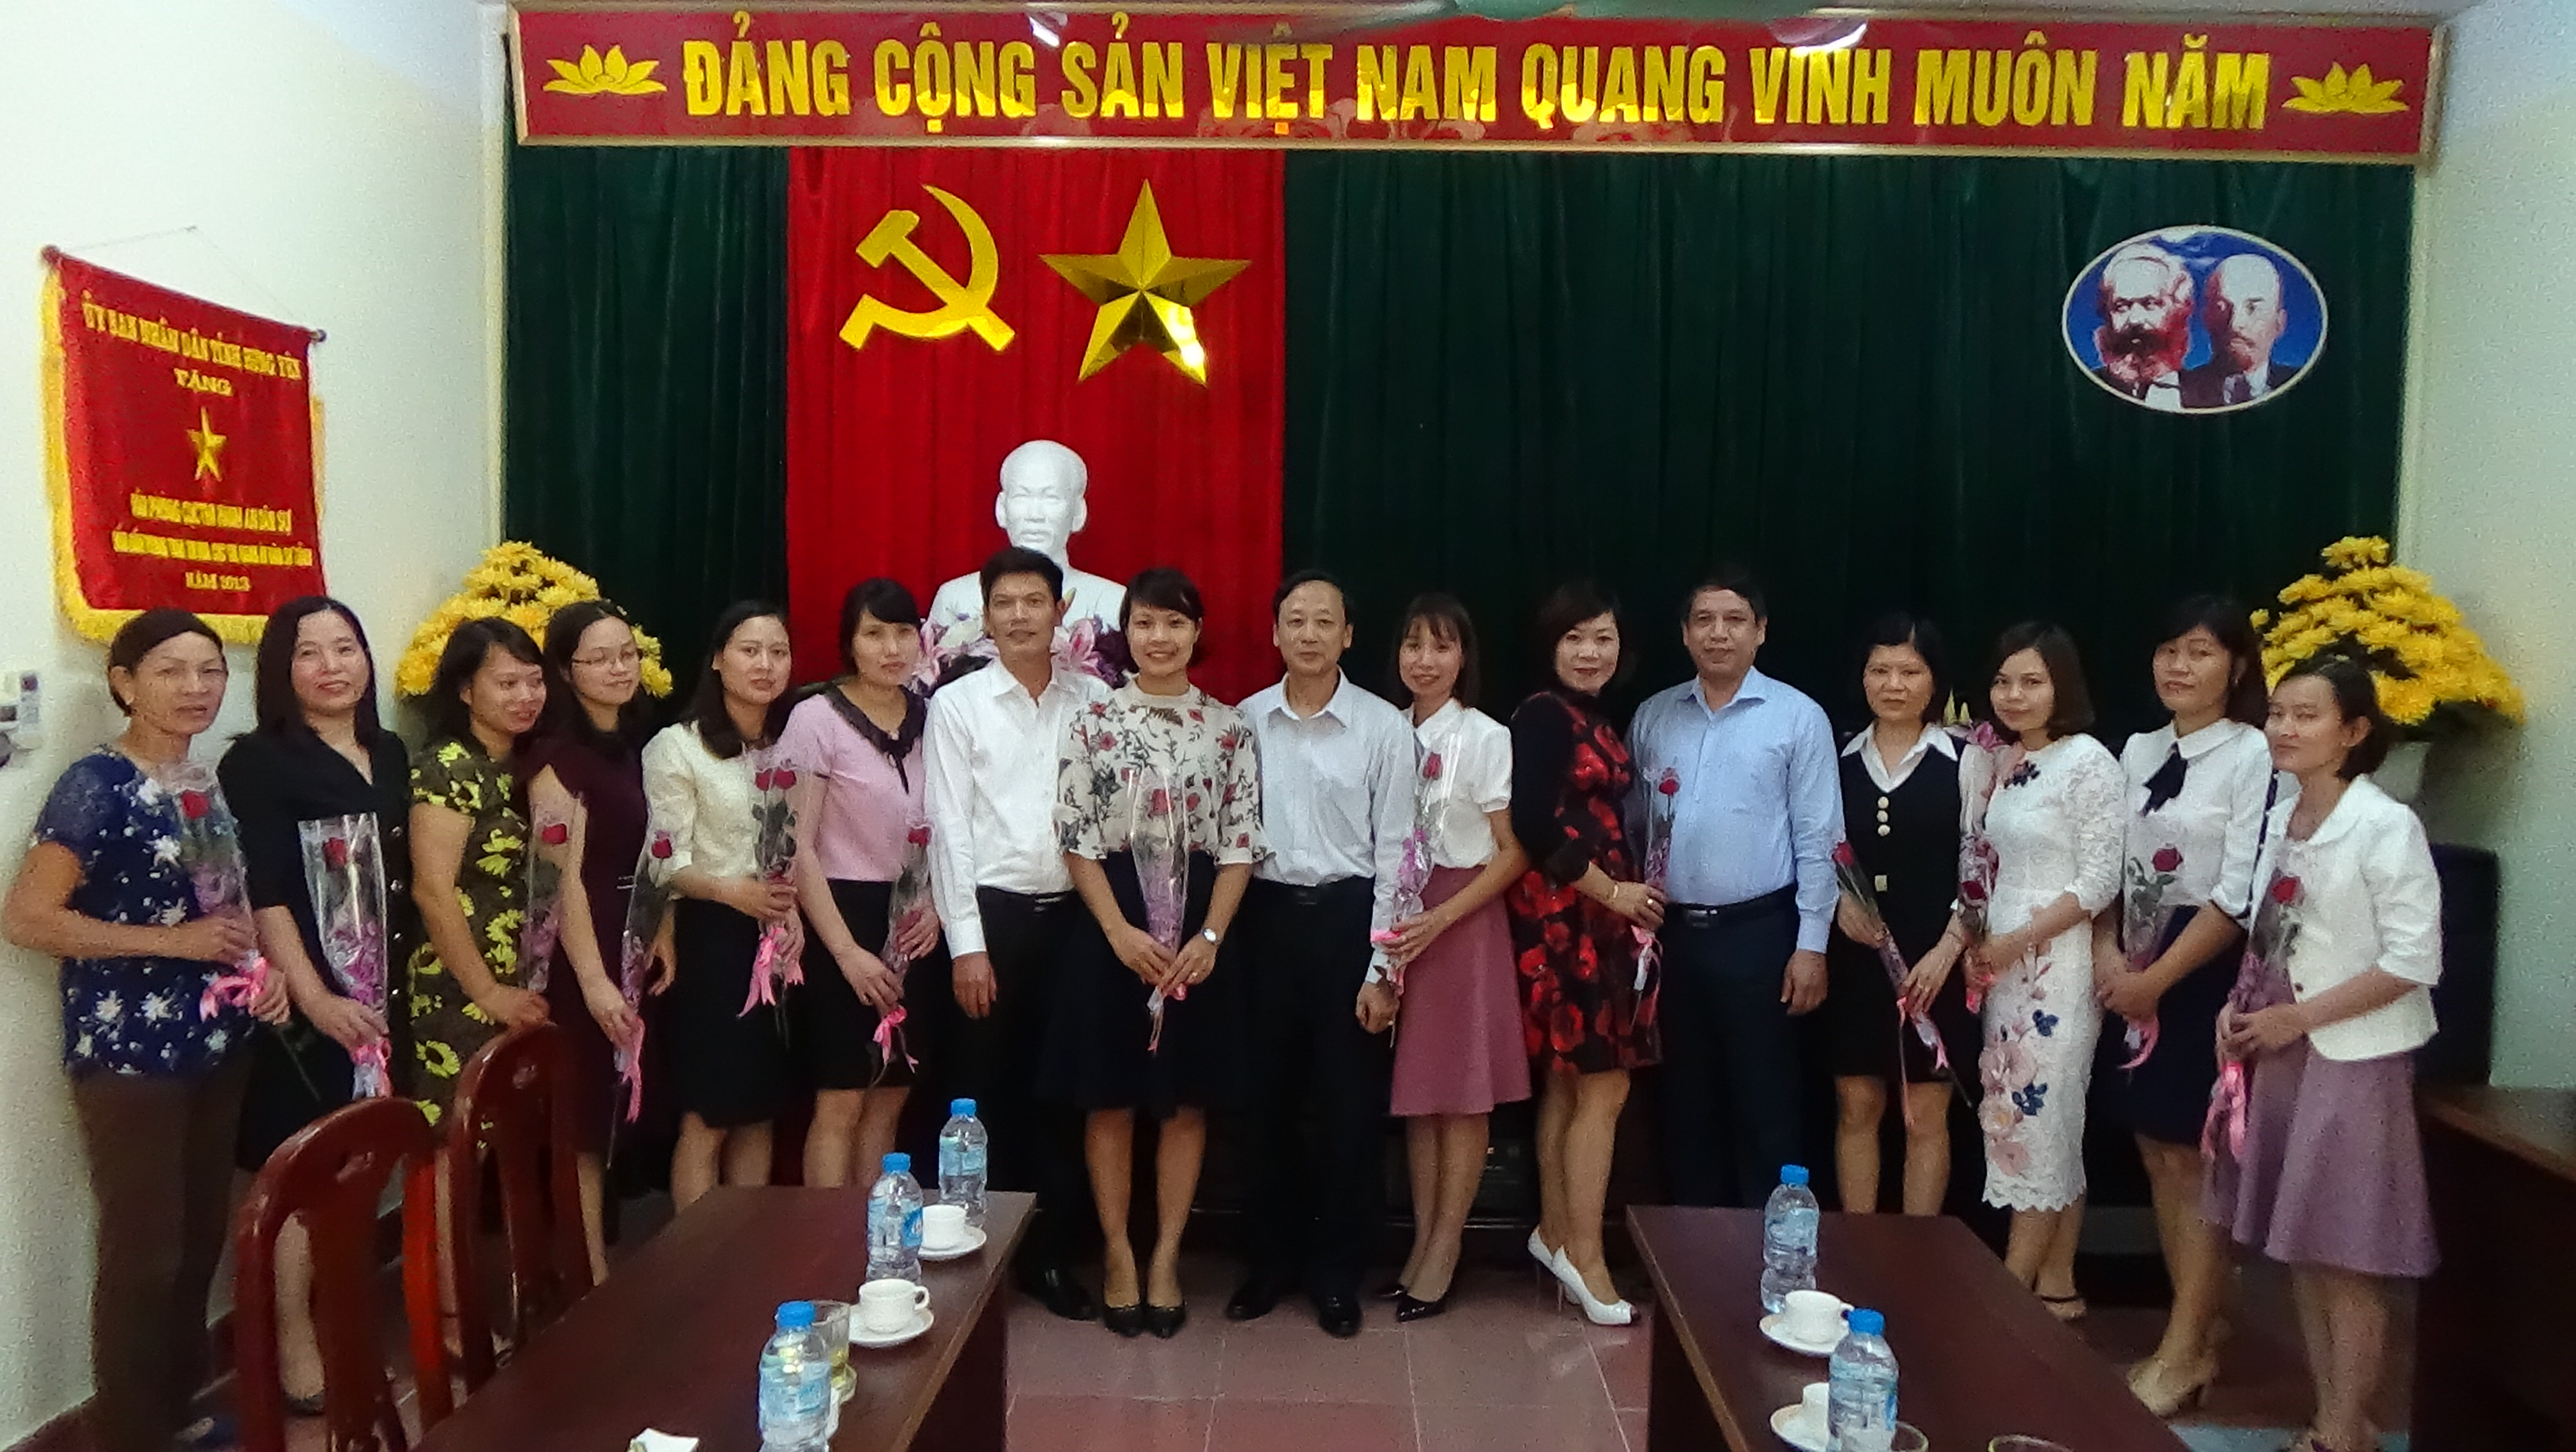 Cục Thi hành án dân sự tỉnh Hưng Yên đã tổ chức buổi gặp mặt nhân ngày 20/10/2017